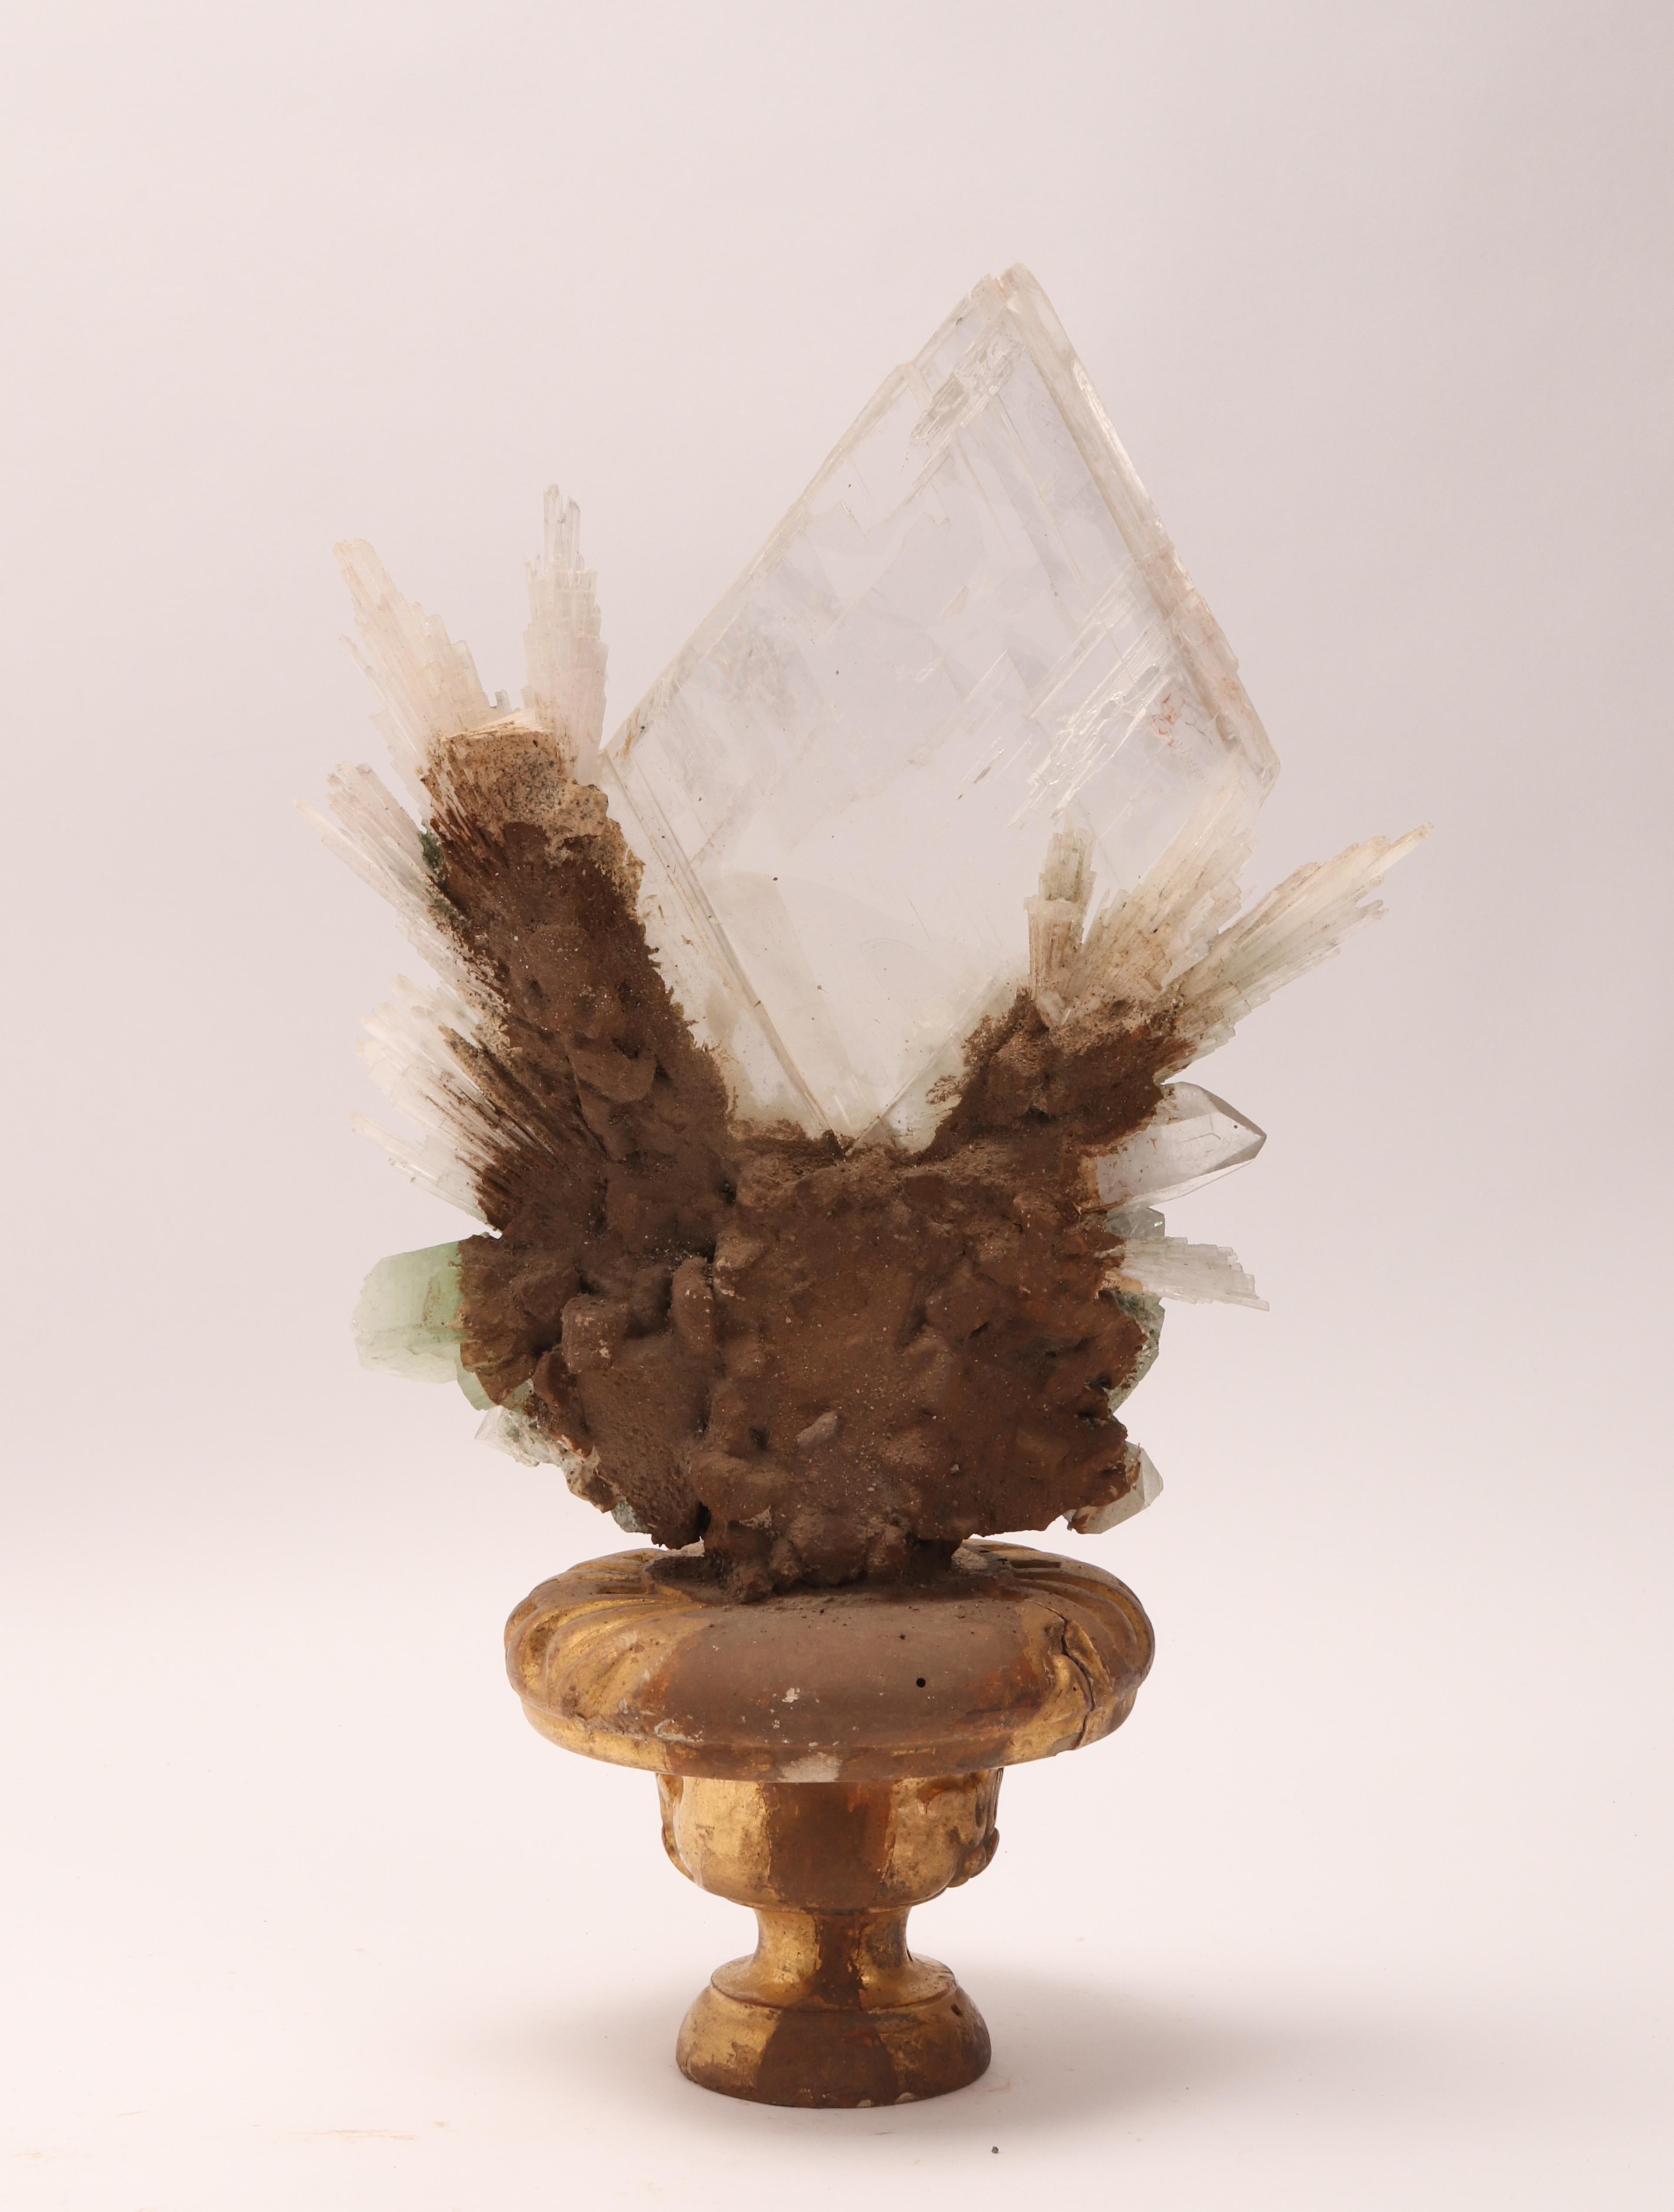 Natural Specimen Apophilite, Quartz and Calcite Flowers Crystals, Italy 1880 2